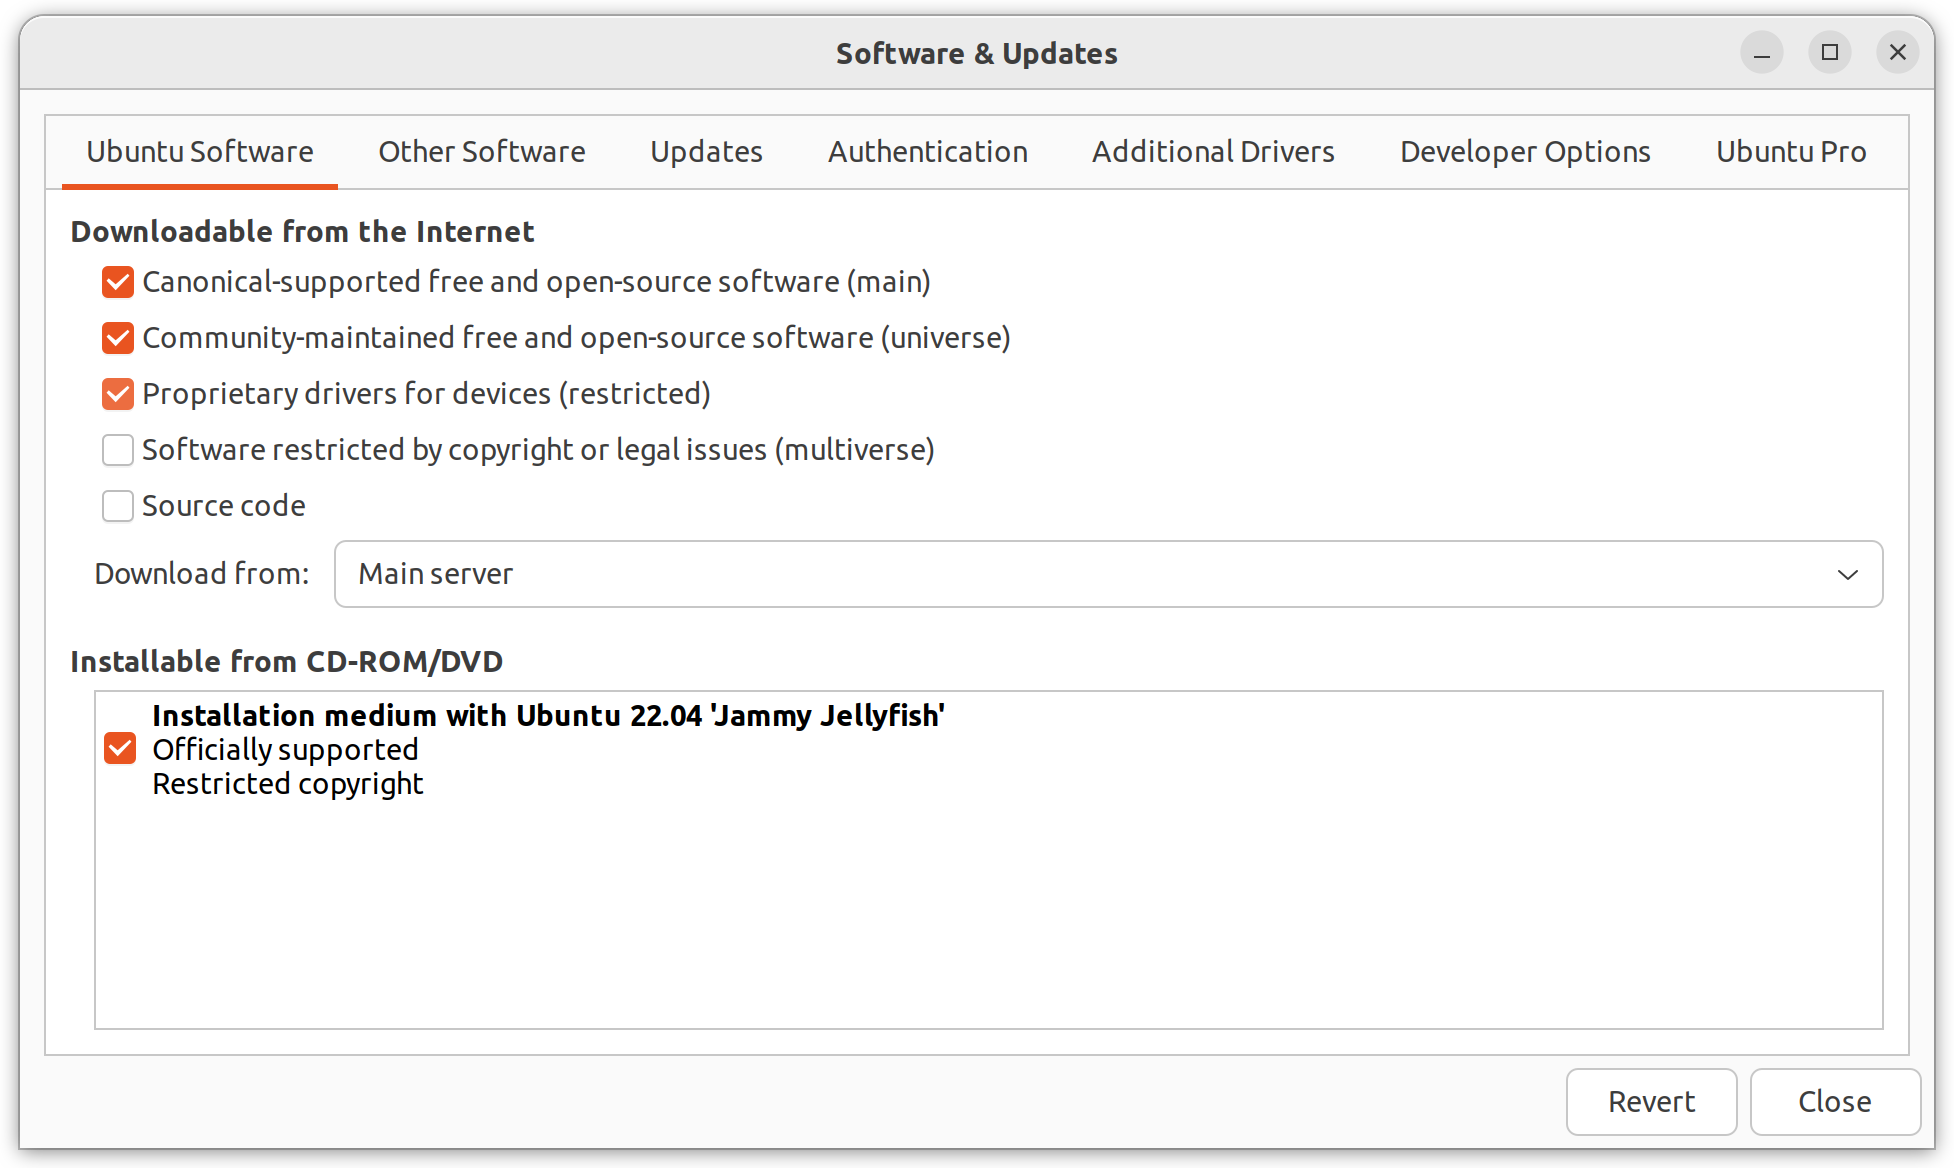 How to check my IP address on Ubuntu 22.04 Jammy Jellyfish Linux